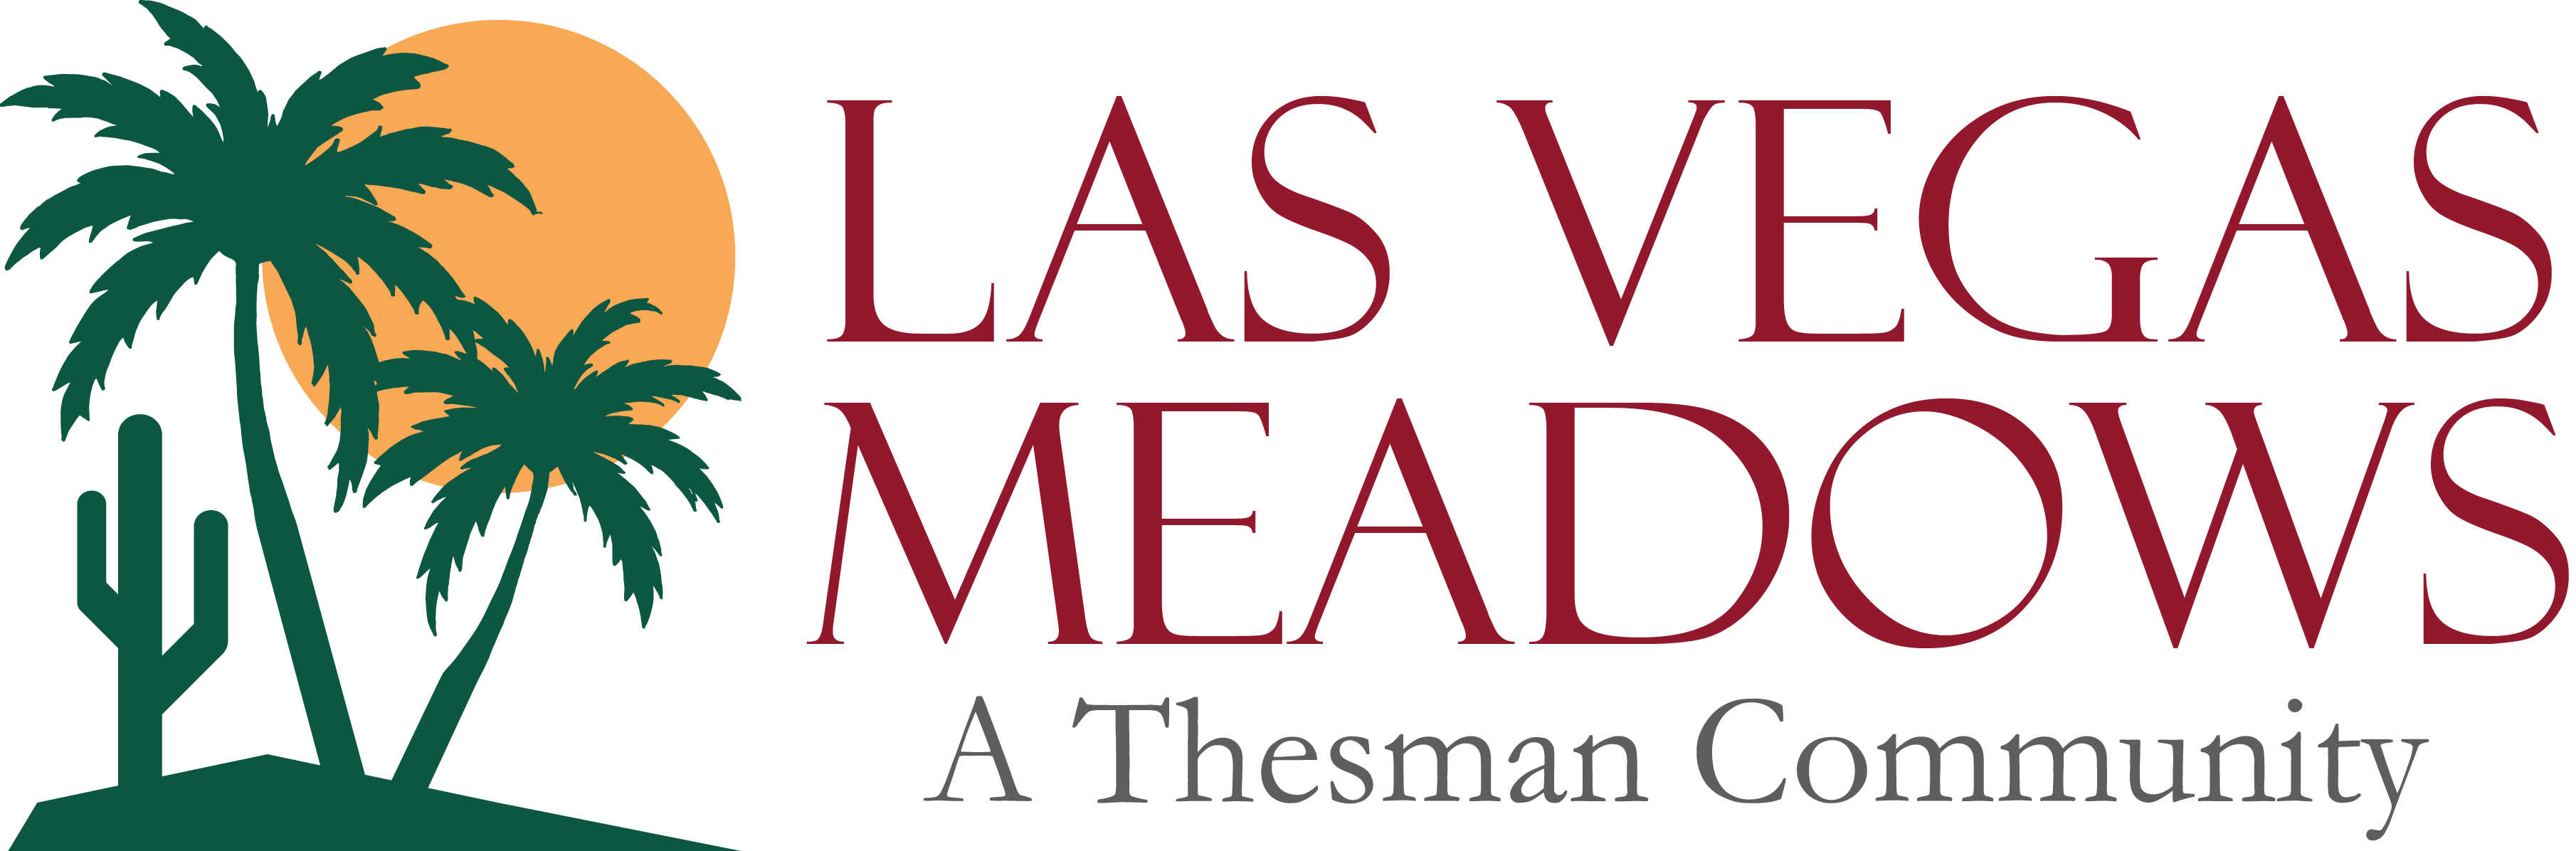 Las Vegas Meadows | Active 55+ Community | Las Vegas| Desert Living